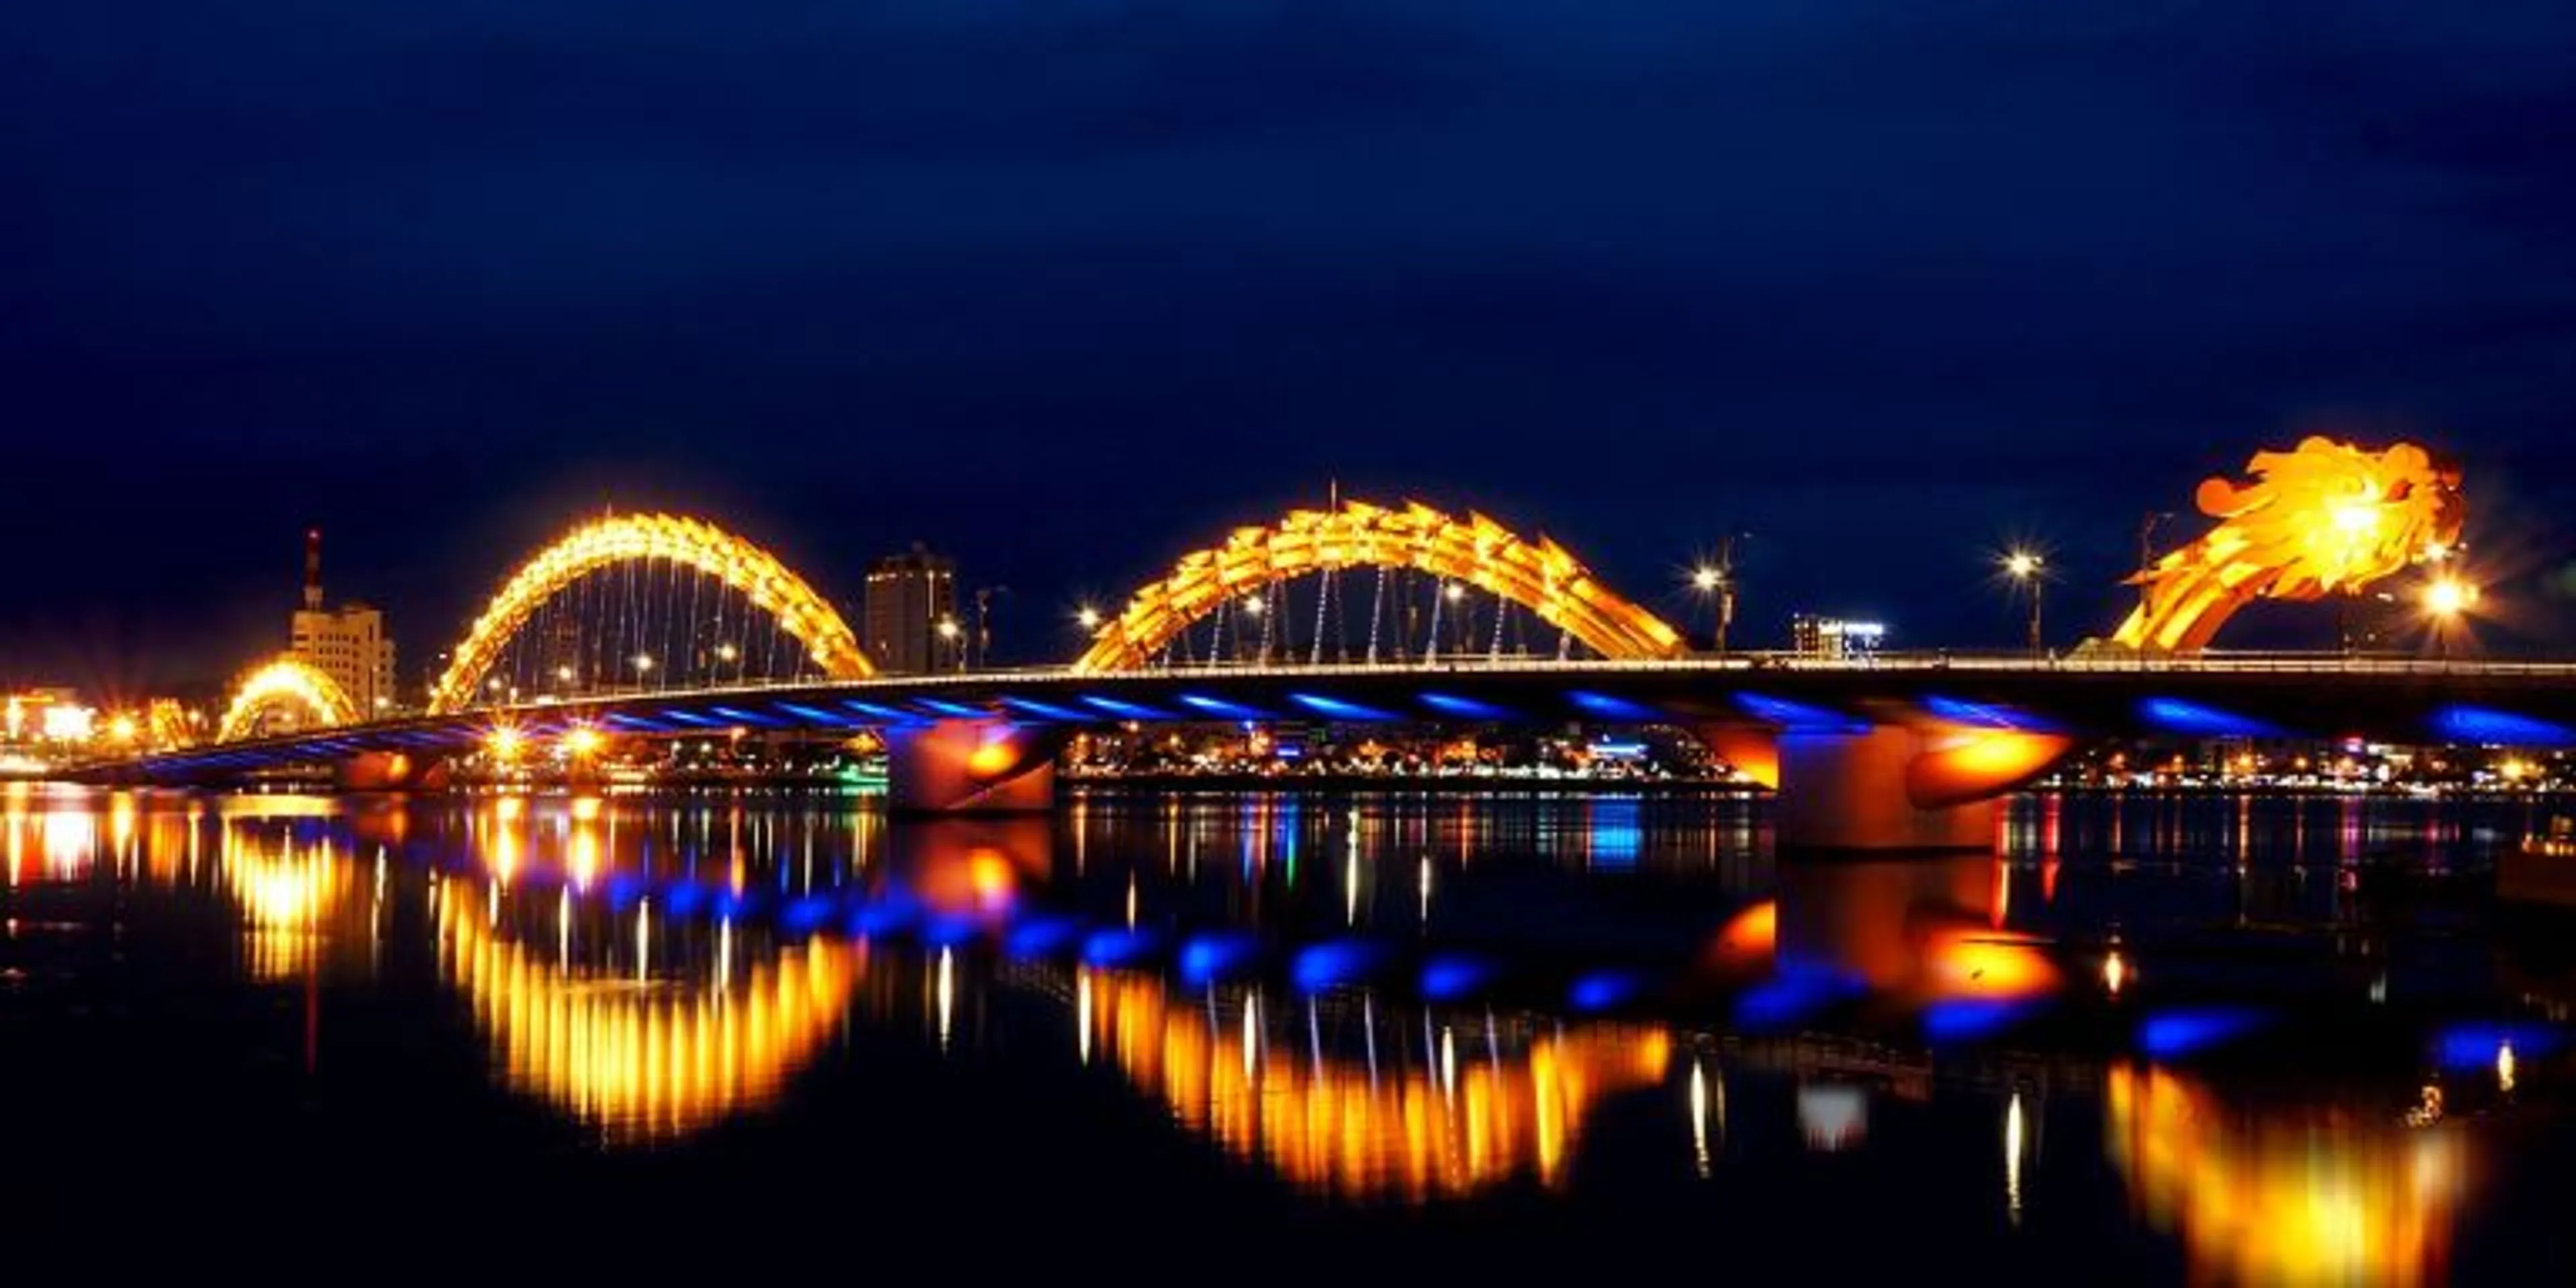 Tour du lịch Đà Nẵng 3 ngày 2 đêm khởi hành Hà Nội siêu hấp dẫn